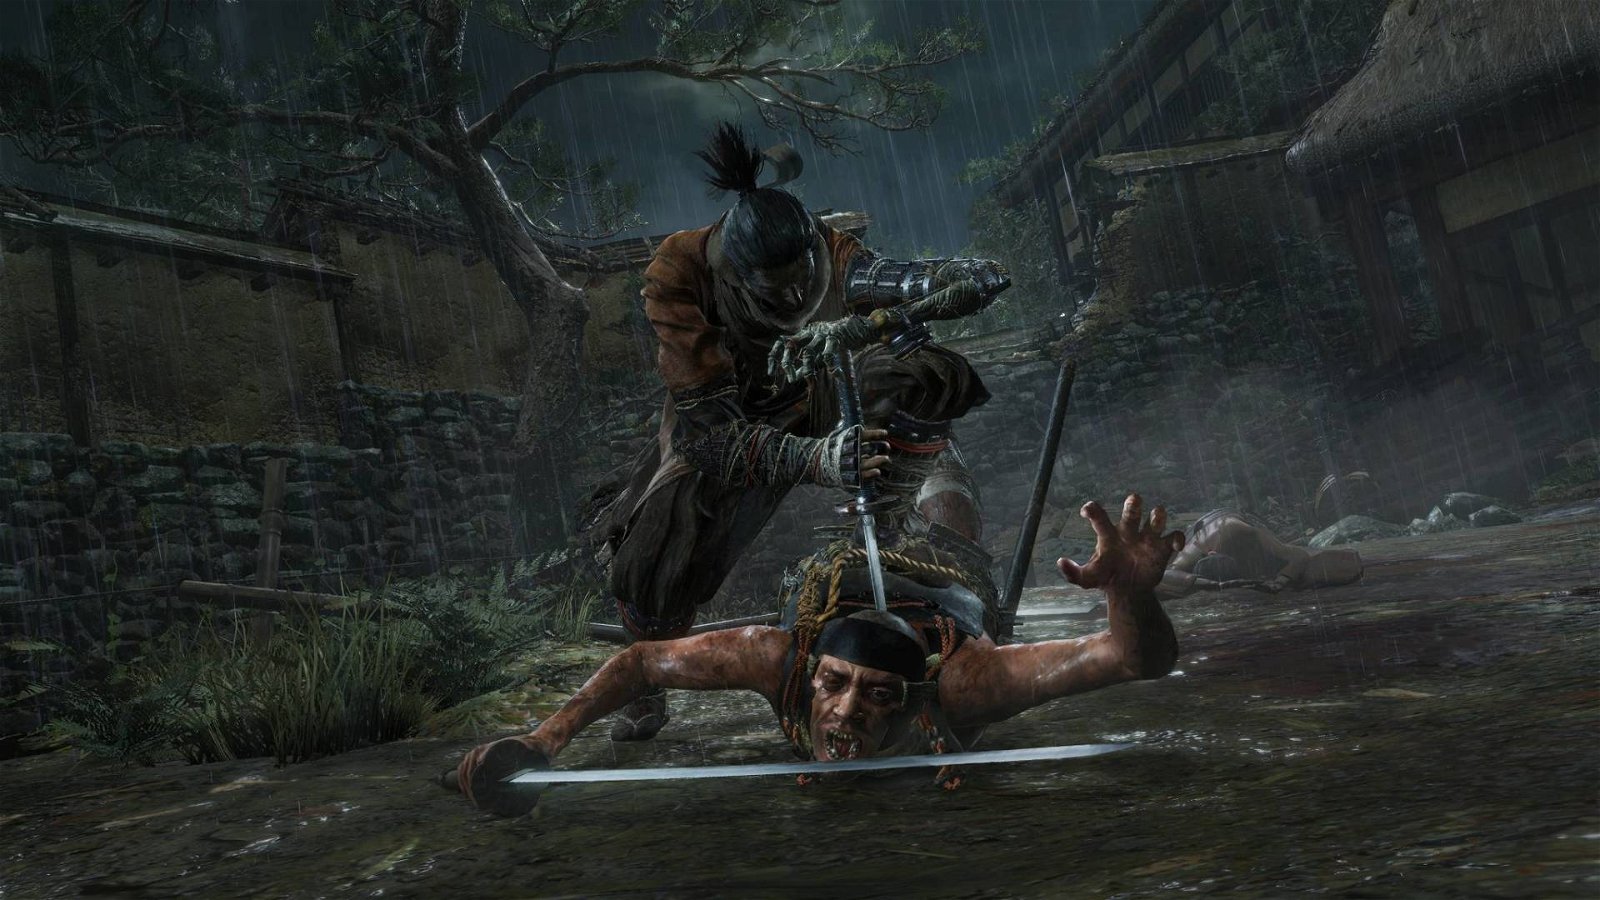 Immagine di E3 2019 From Software: Elden Ring è il nuovo gioco dei creatori di Dark Souls e Sekiro, secondo un leak